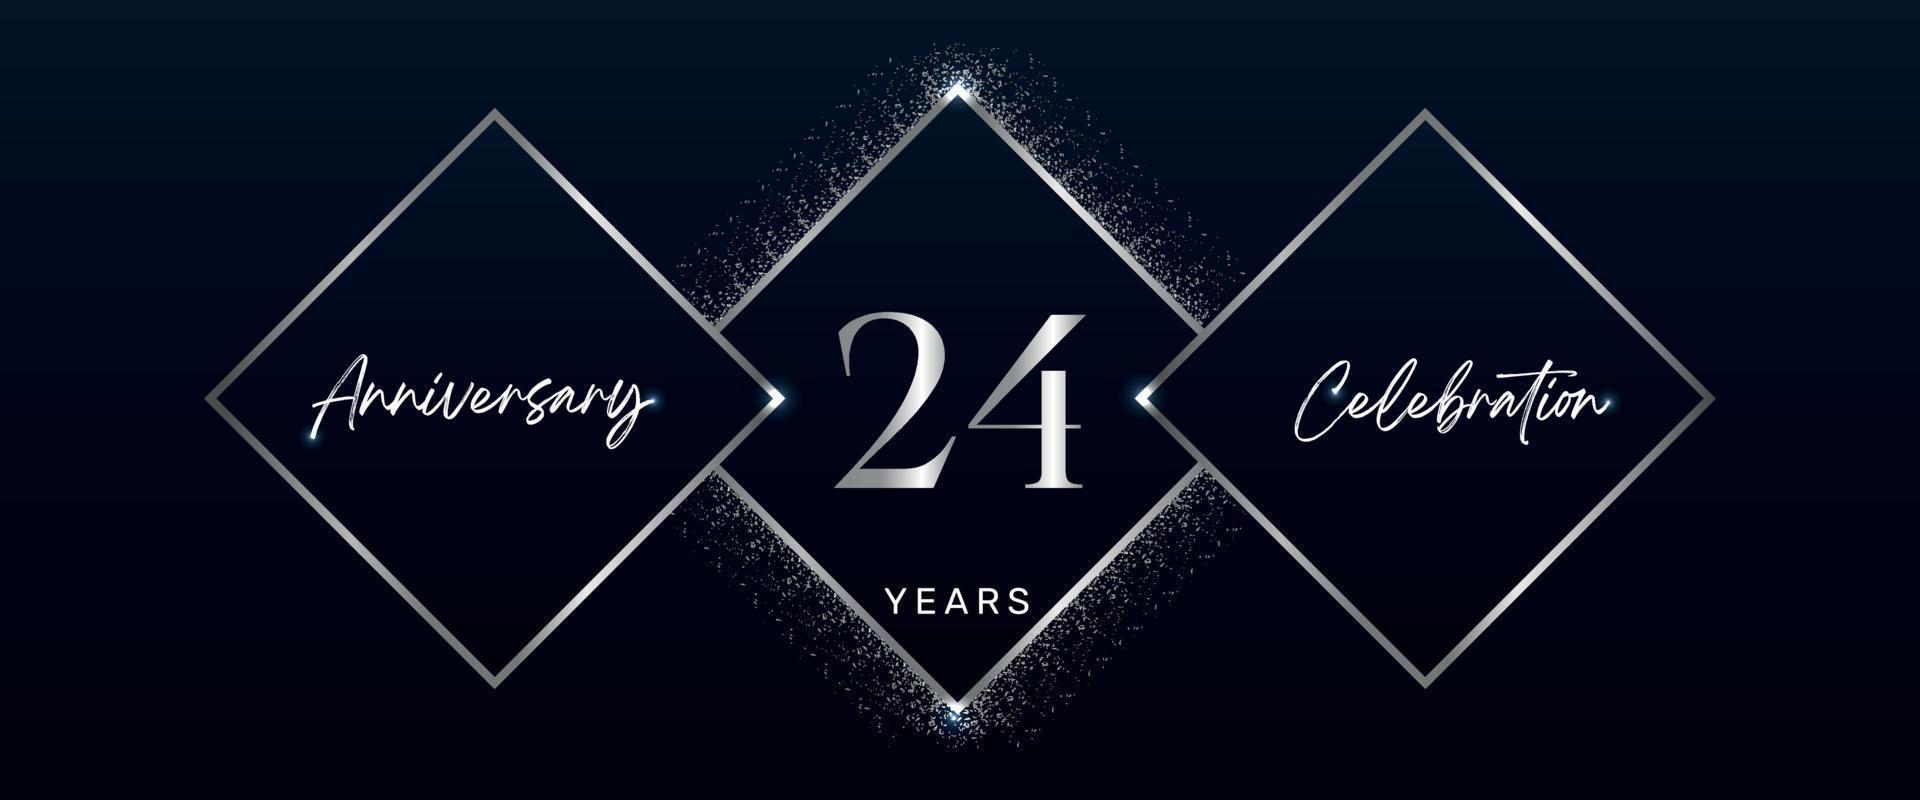 Logotipo de celebración de aniversario de 24 años. diseño vectorial para eventos de celebración de aniversario, fiesta de cumpleaños, tarjeta de felicitación, boda, tarjeta de invitación. vector de diseño de plantilla de aniversario de 24 años